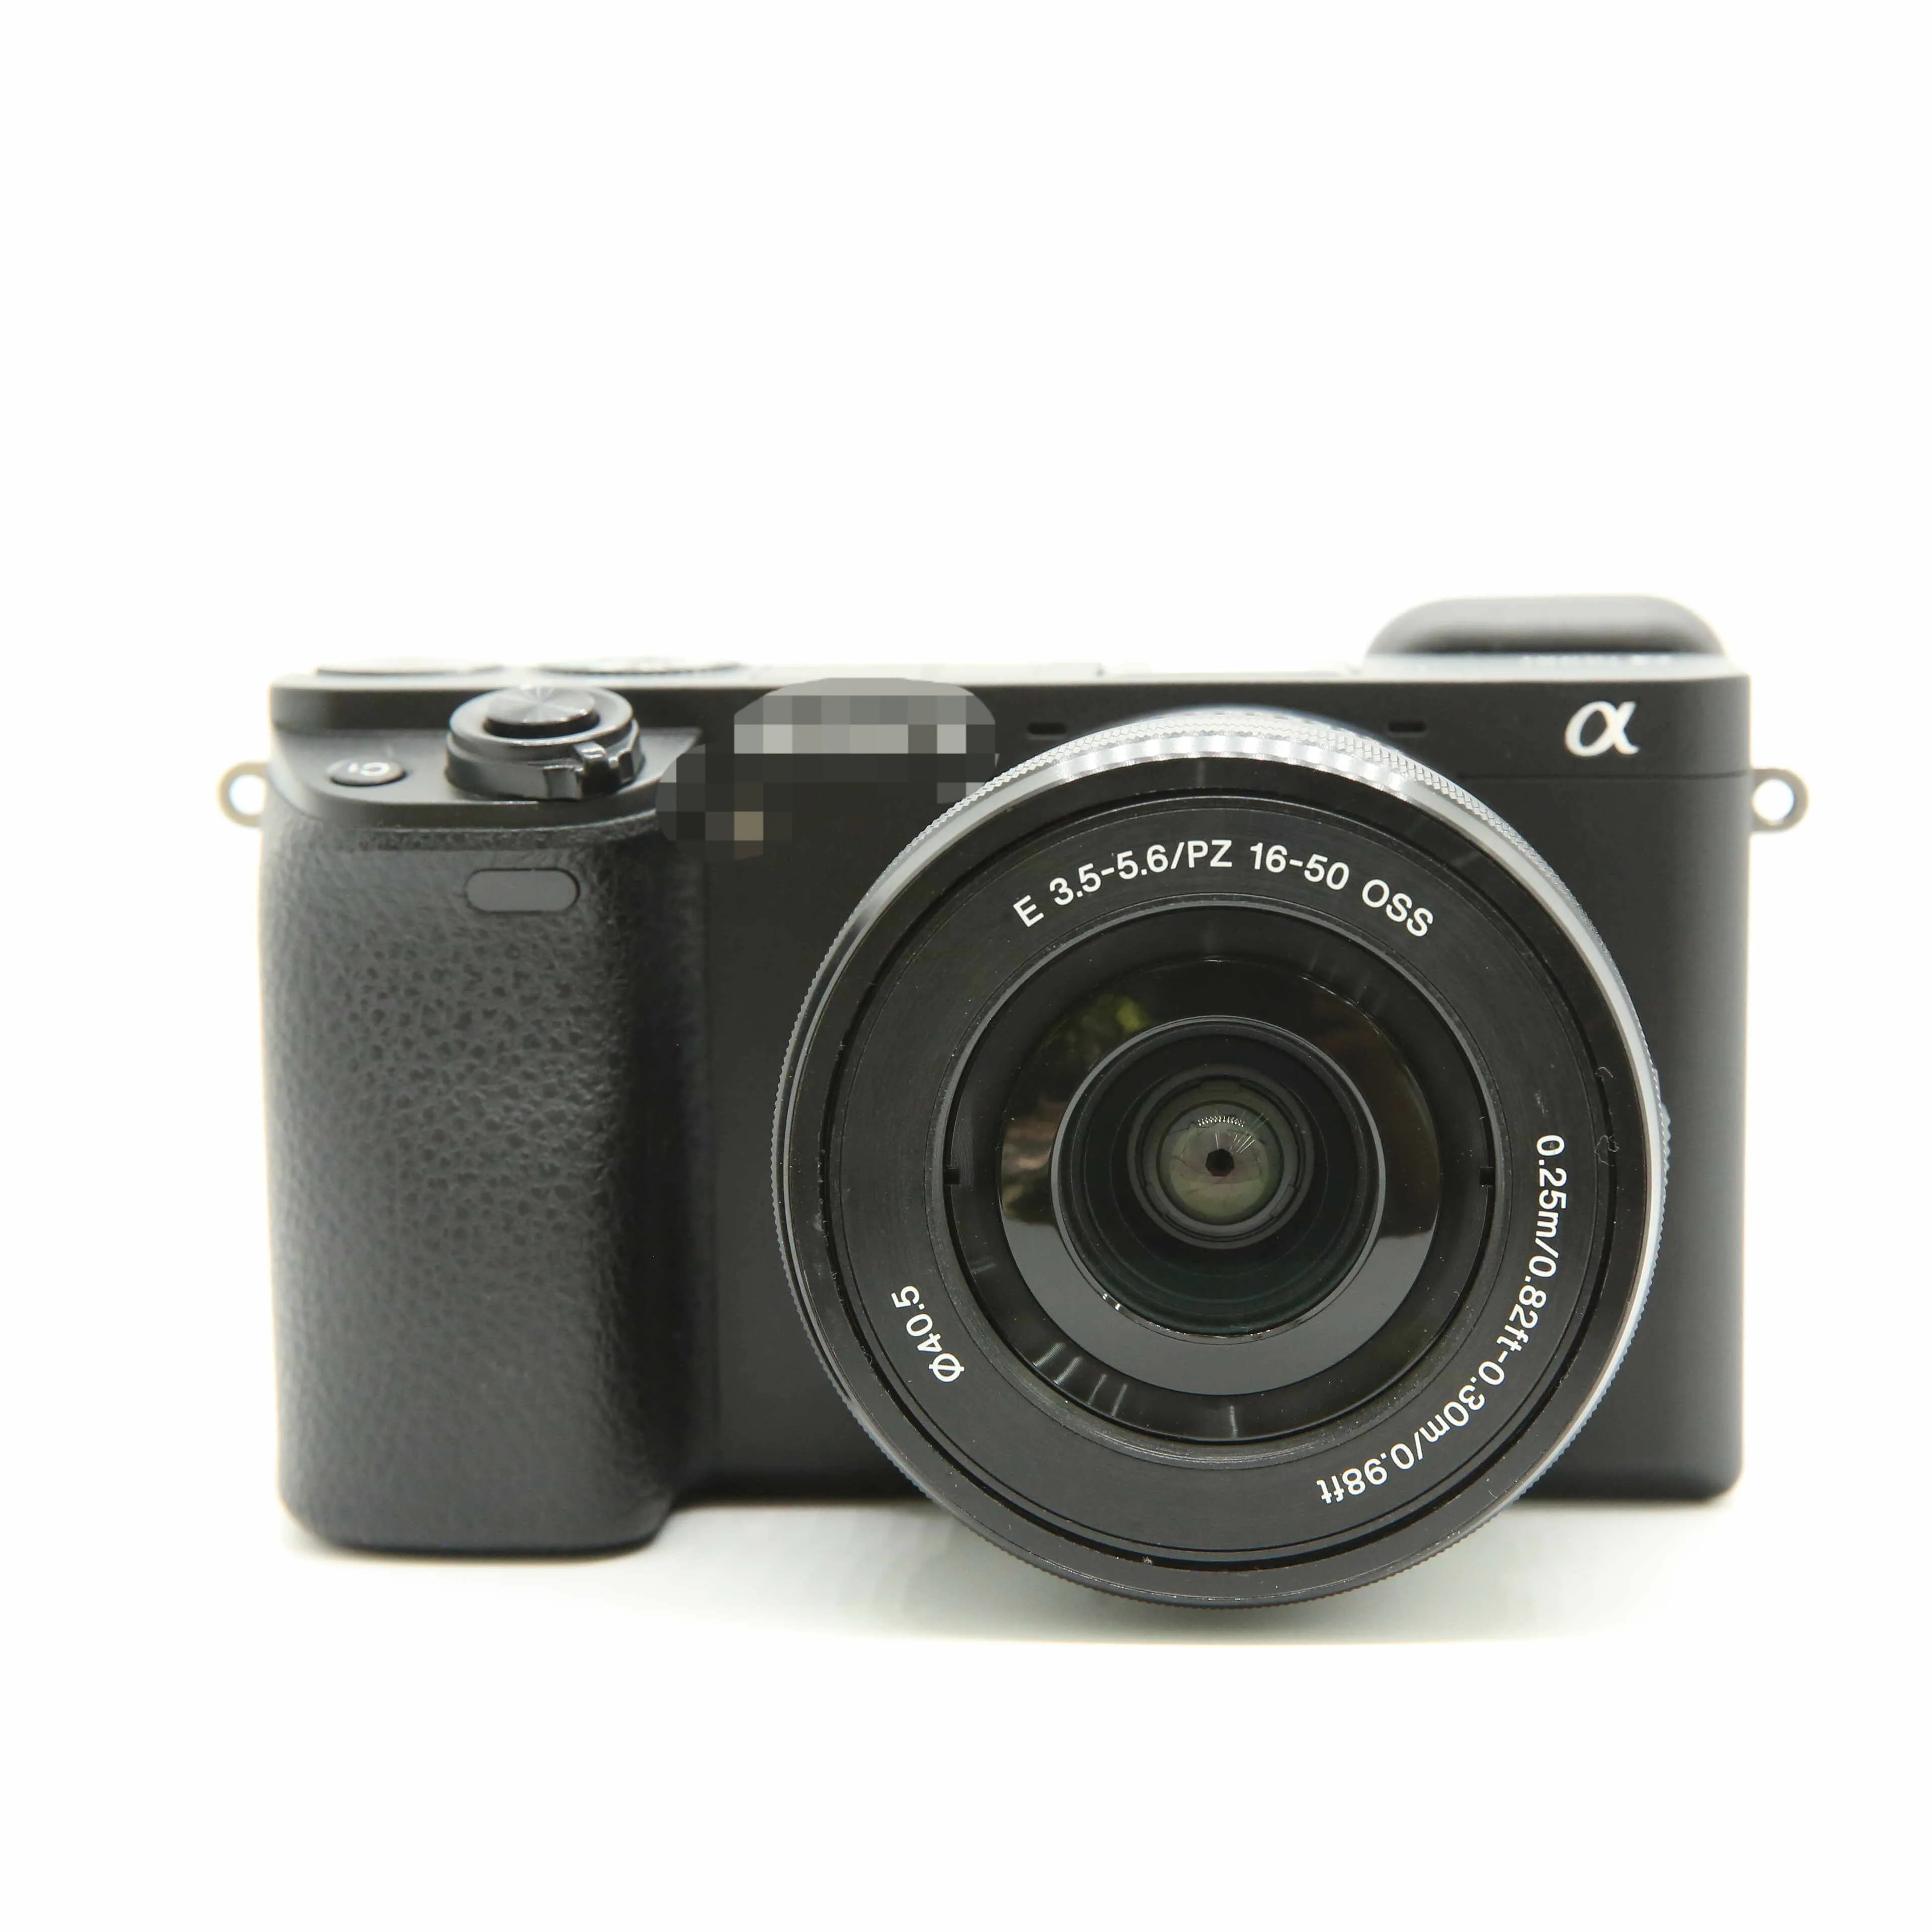 Orijinal kullanılan marka mikro tek video kamera a6000 + 16-50 lens ile pil şarj cihazı omuz askısı